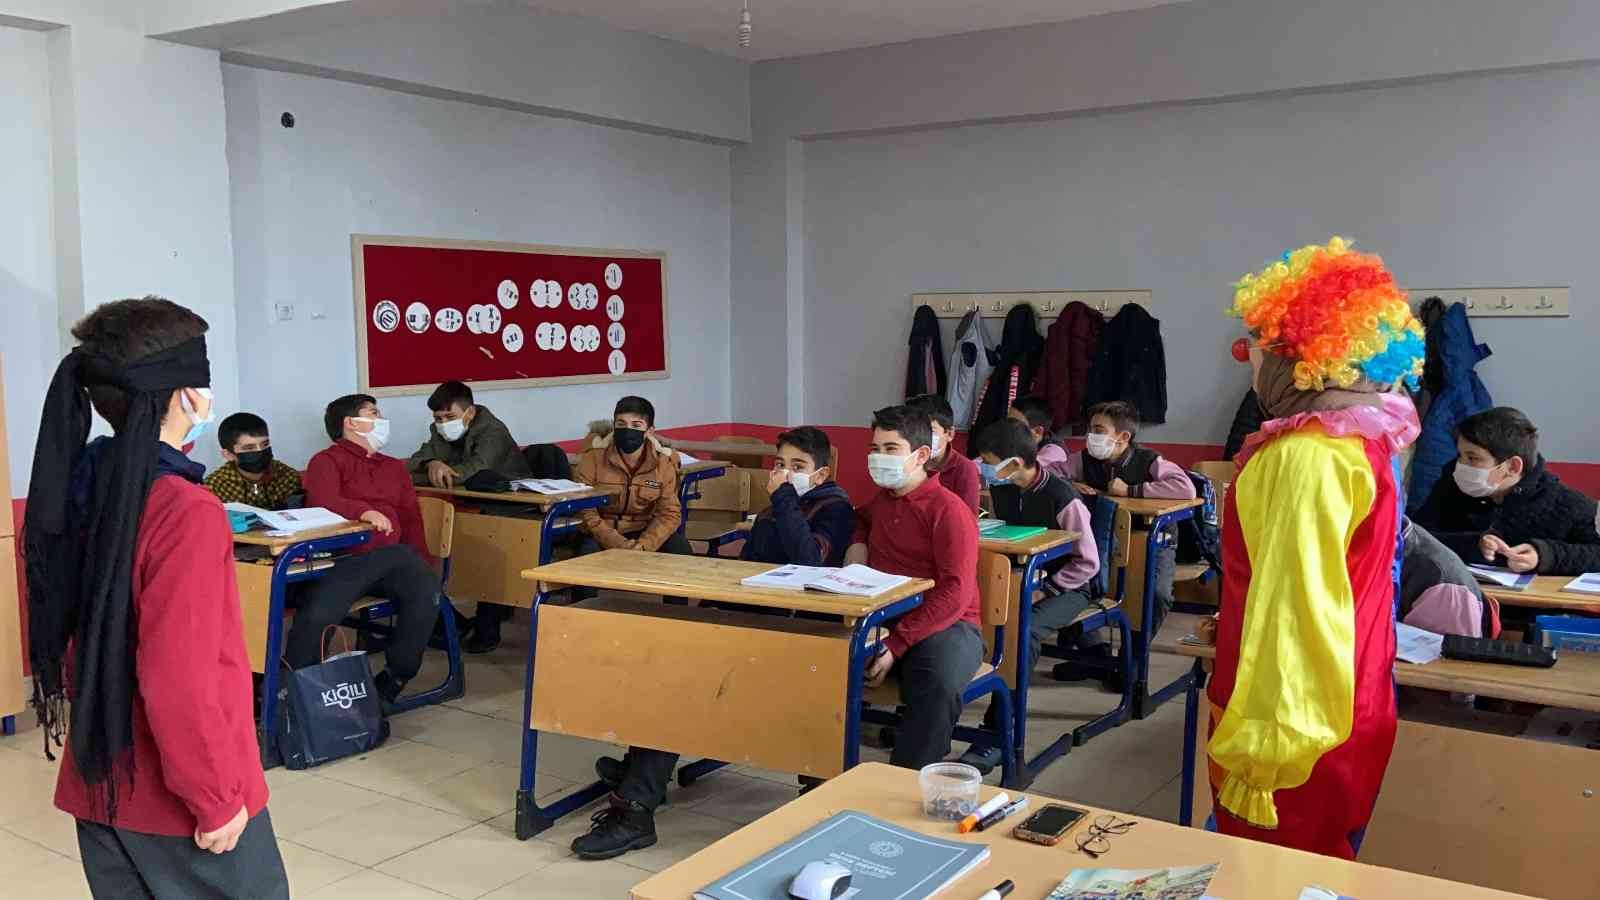 Öğrencilere okulu sevdirmek isteyen öğretmen palyaço kıyafetiyle derse girdi